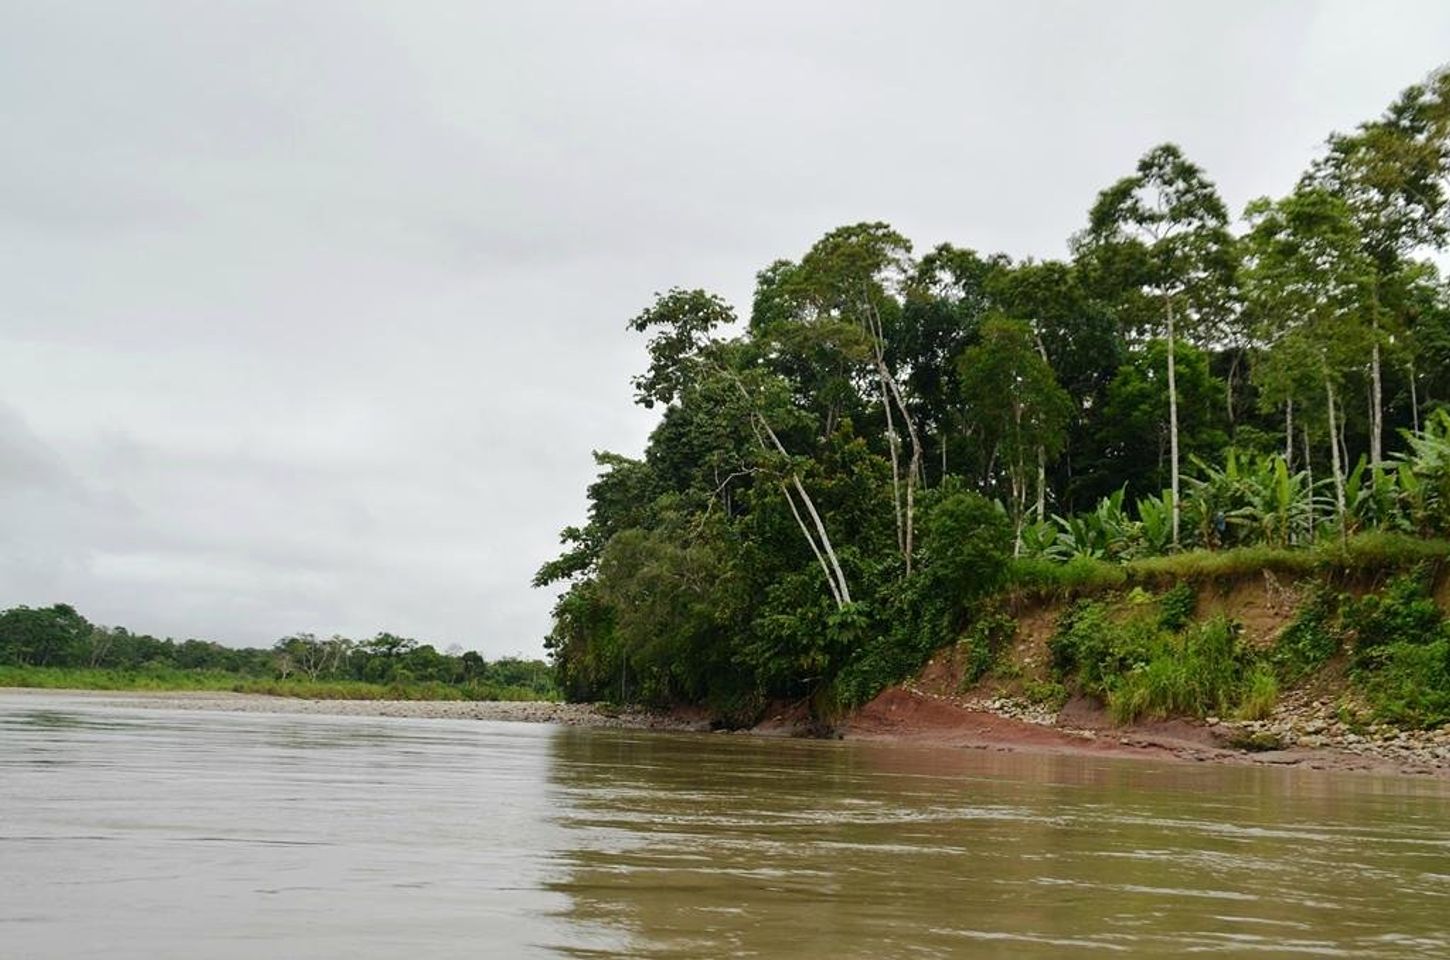 Des aventures sauvages vous attendent : faire du rafting sur la rivière Napo à Tena, en Équateur.